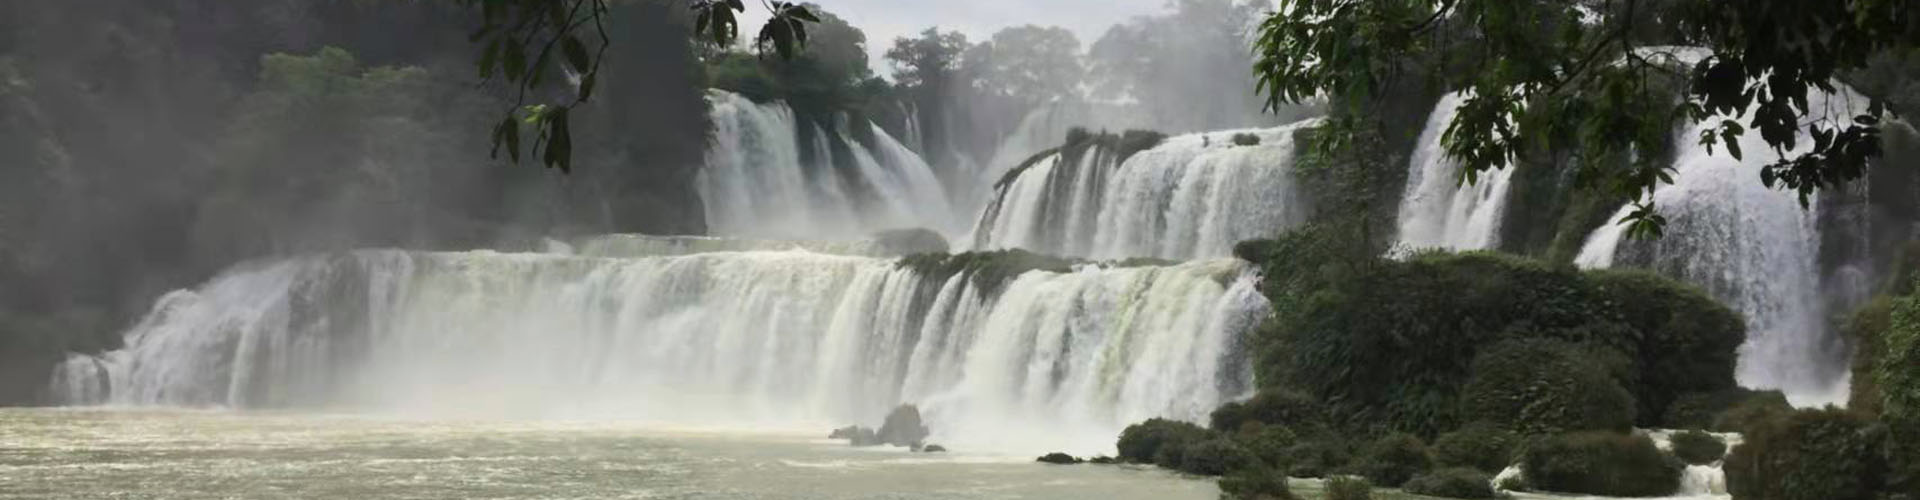 cascade de Detian à Daxin